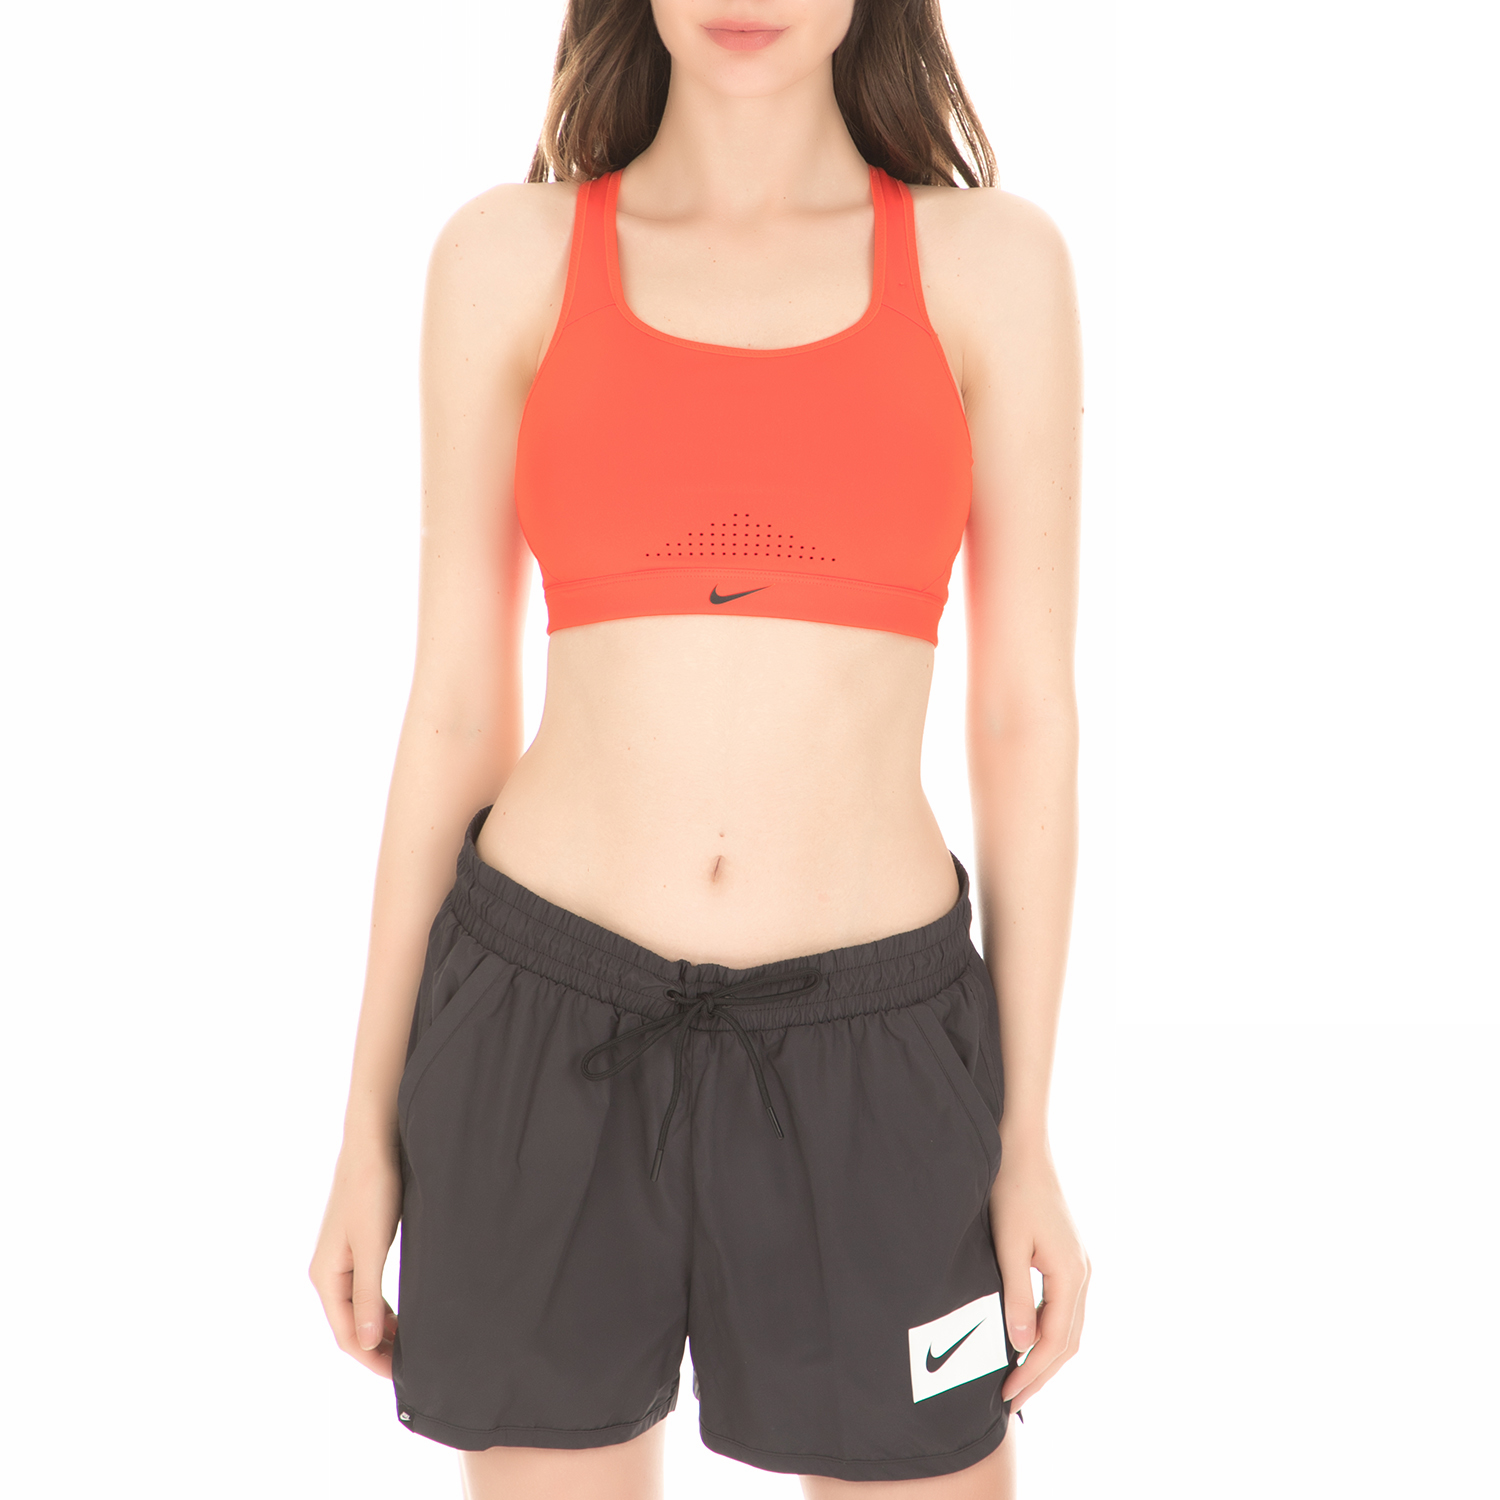 NIKE - Γυναικείο αθλητικό μπουστάκι Nike Impact Sports πορτοκαλί Γυναικεία/Ρούχα/Αθλητικά/Μπουστάκια